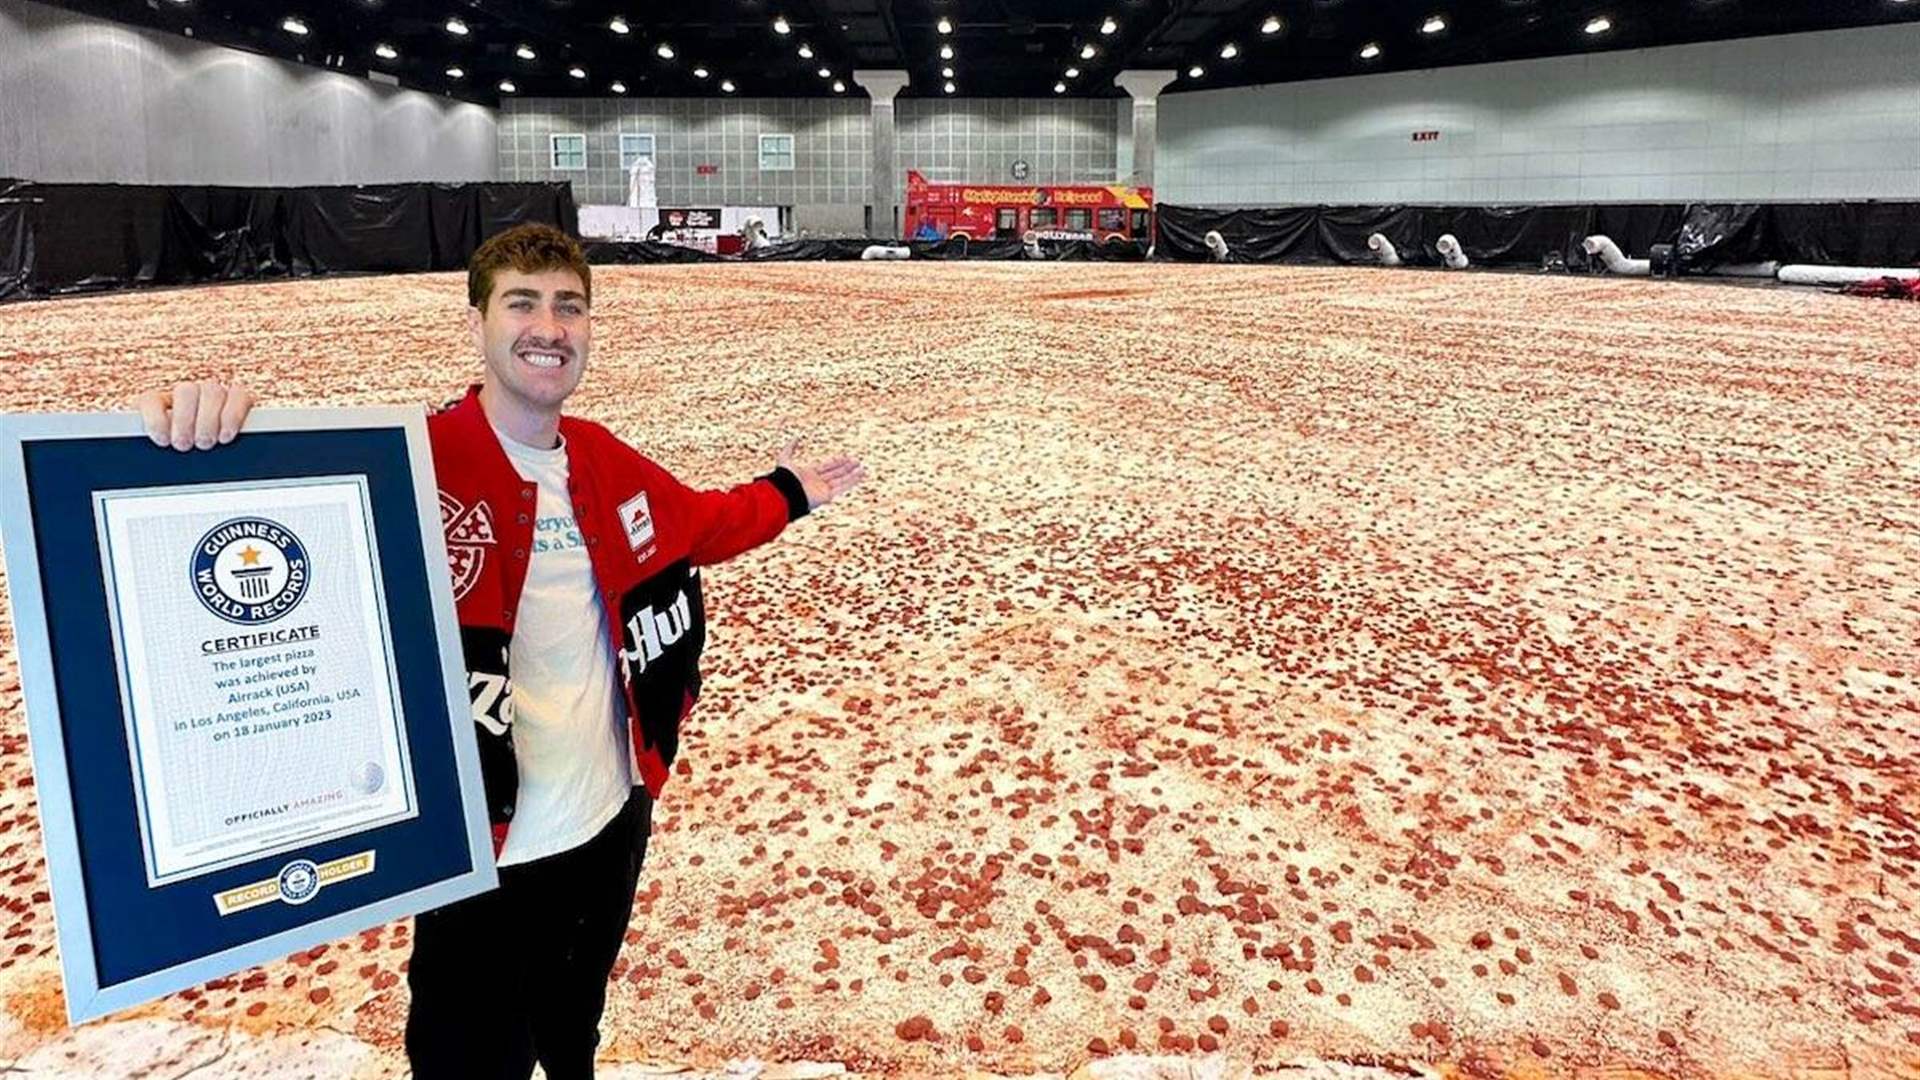 مساحتها نحو 1300 متر مربع... أكبر بيتزا في العالم تكسر الرقم القياسي لـ&quot;غينيس&quot;